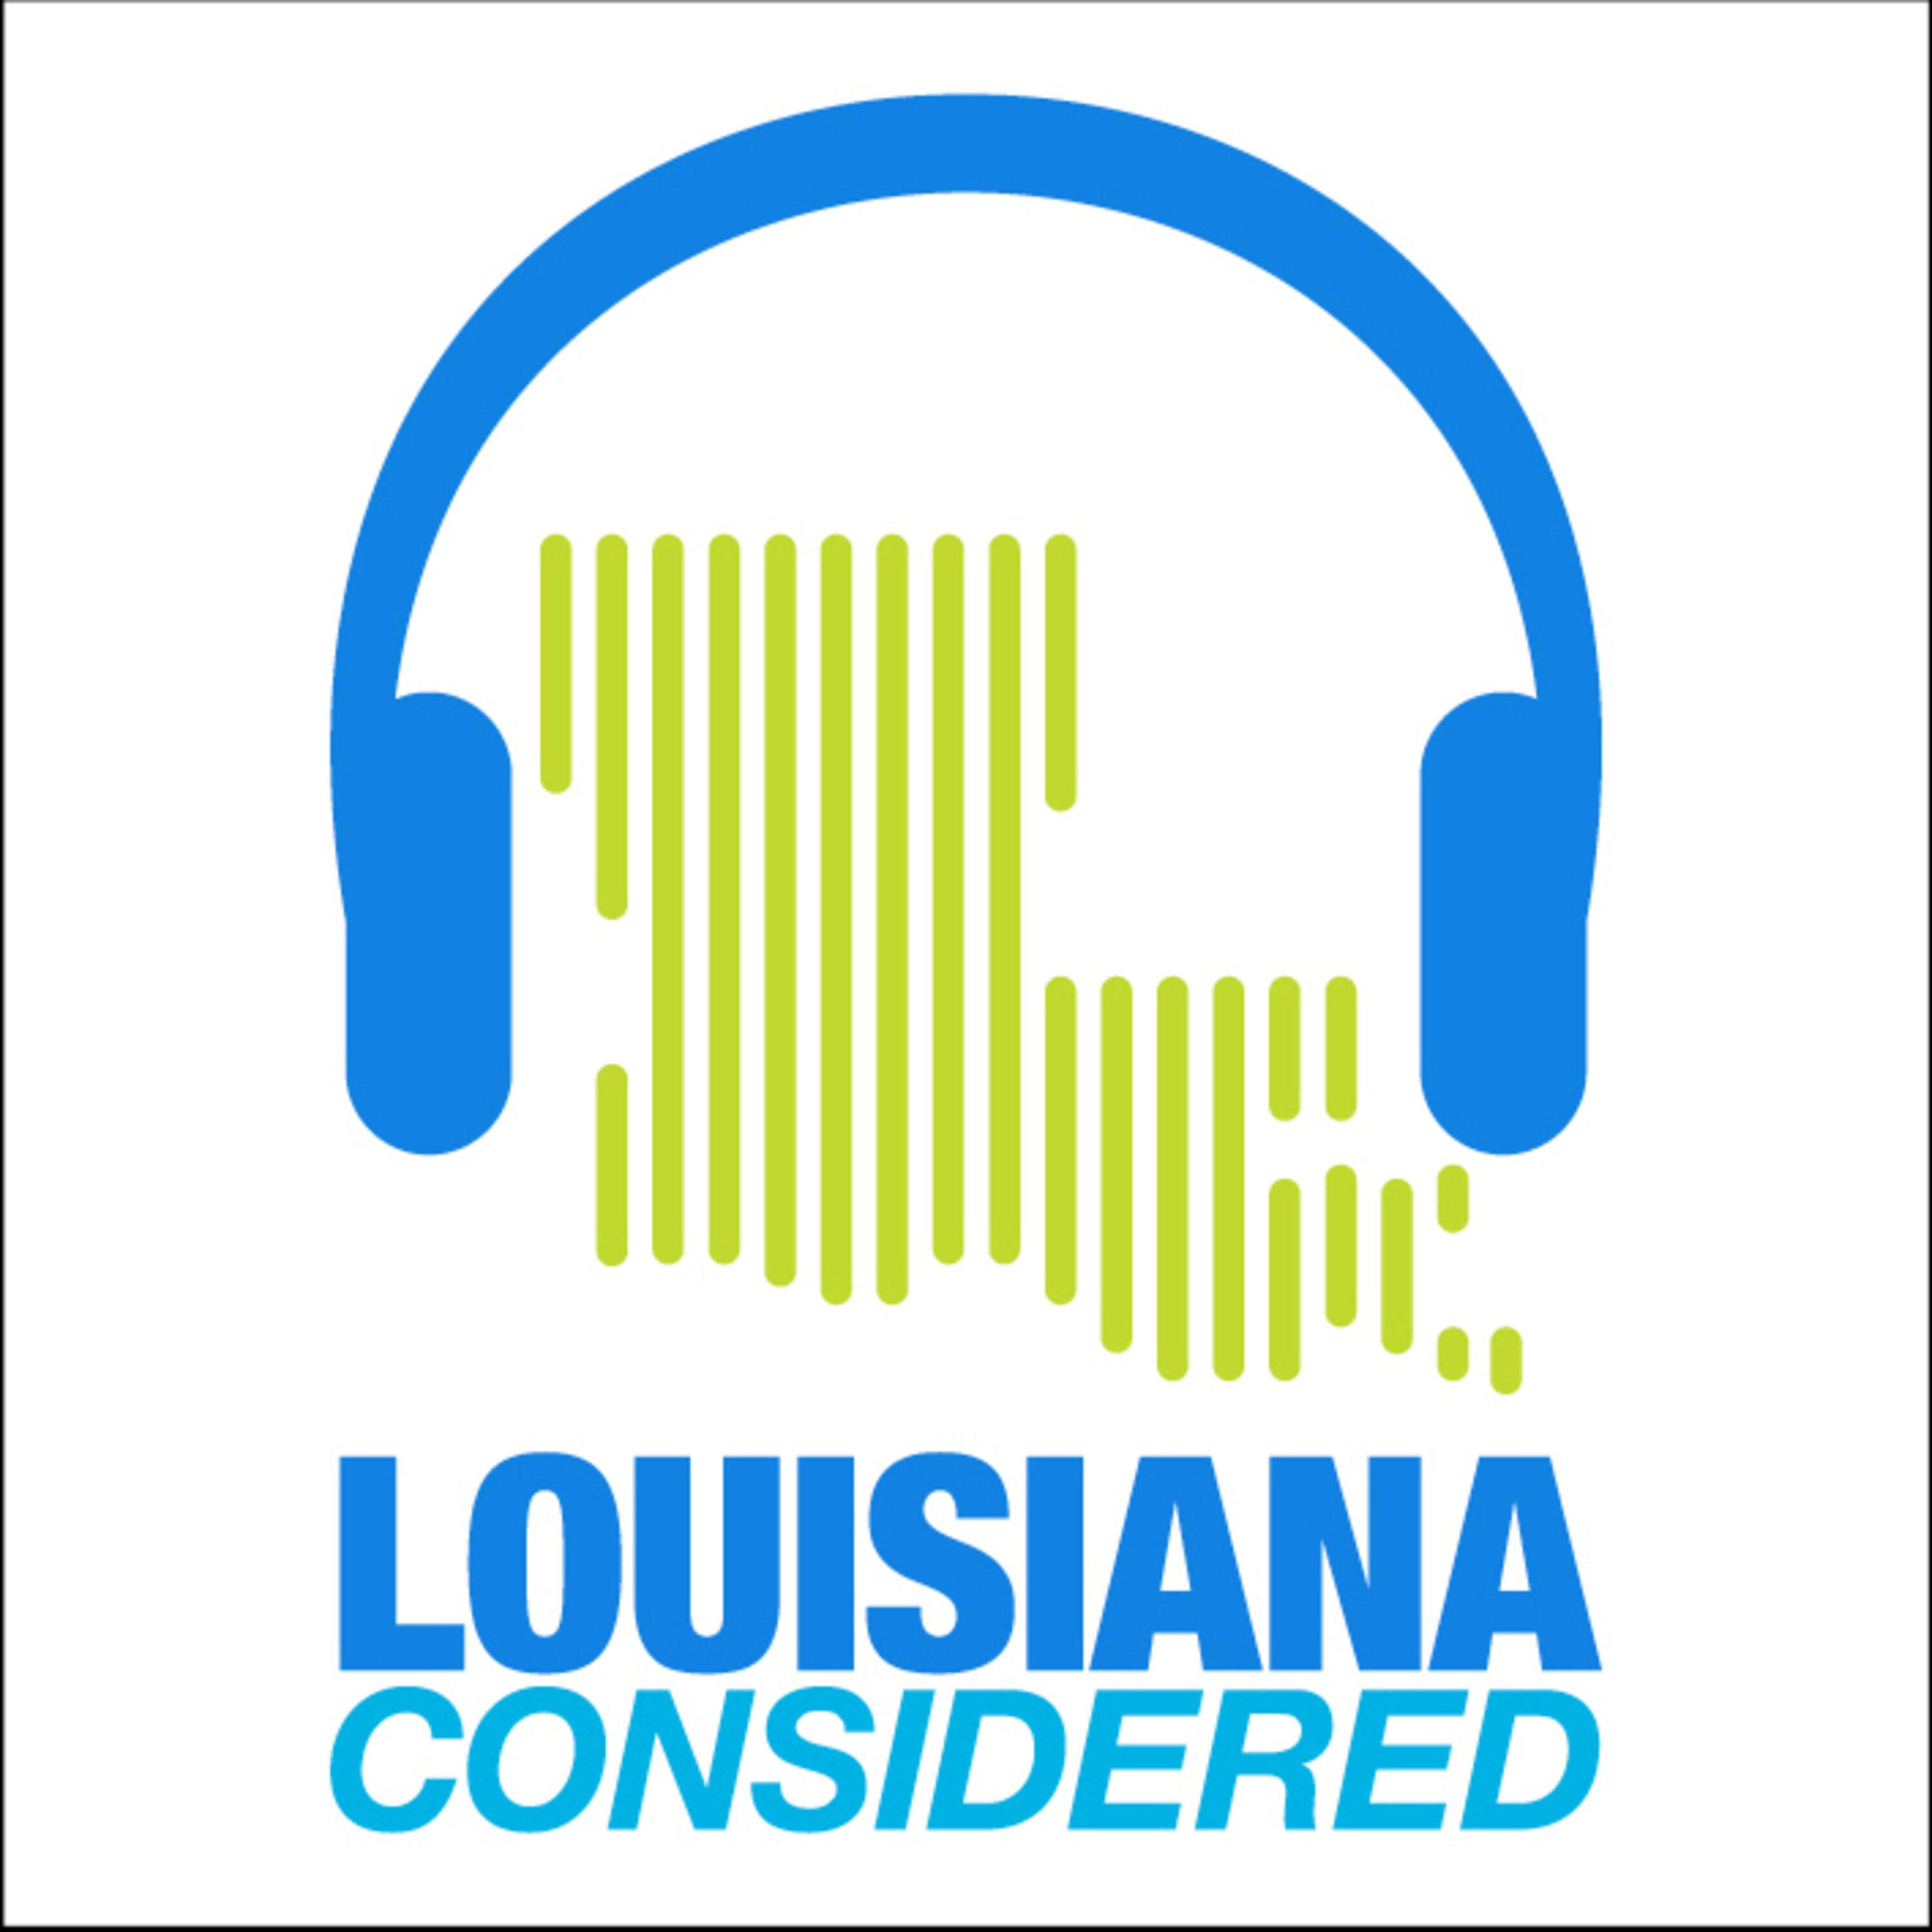 Thumbnail for "Louisiana Considered: Irish Immigration in South Louisiana, The Black Hole Award".